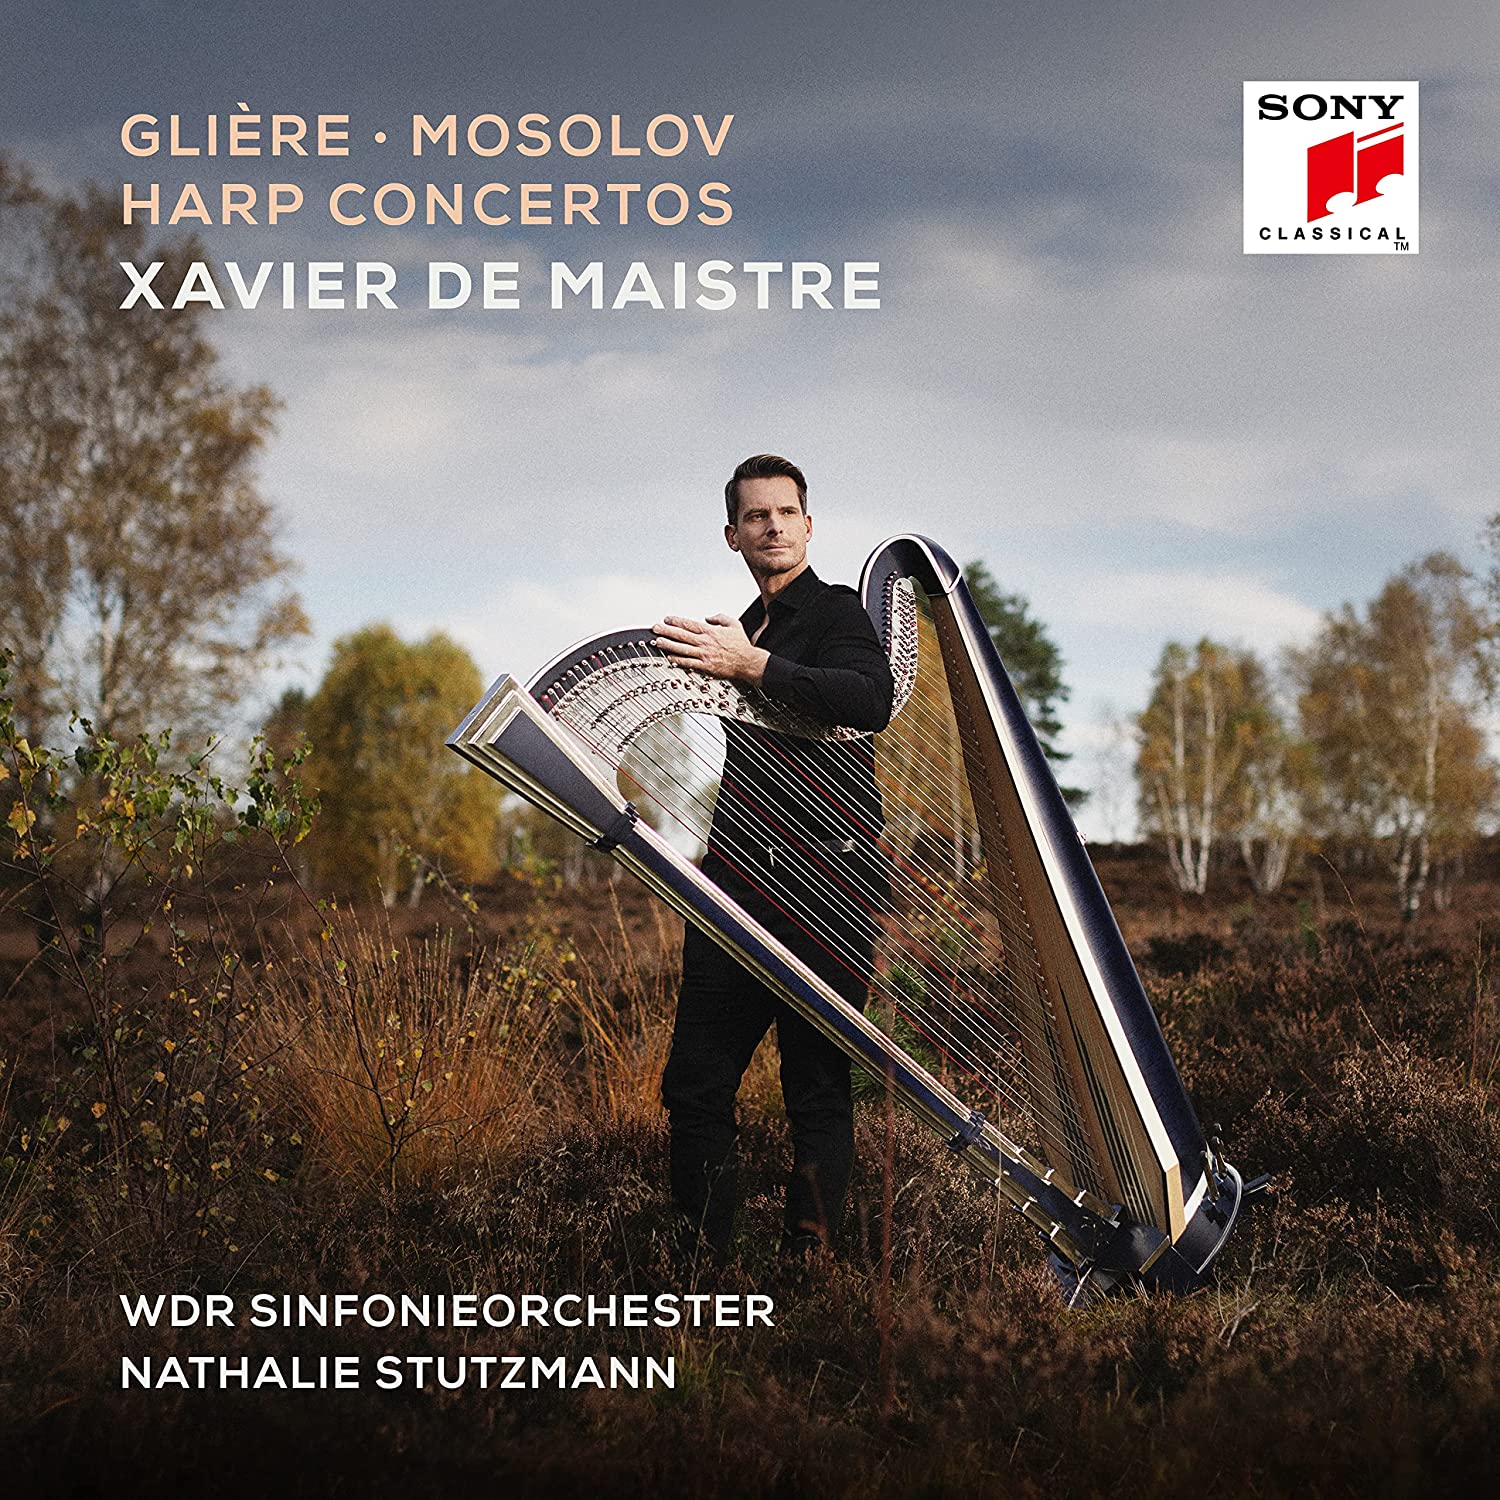 Gliere, Mosolov: Harp Concertos | Xavier de Maistre, WDR Sinfonieorchester, Natalie Stutzmann